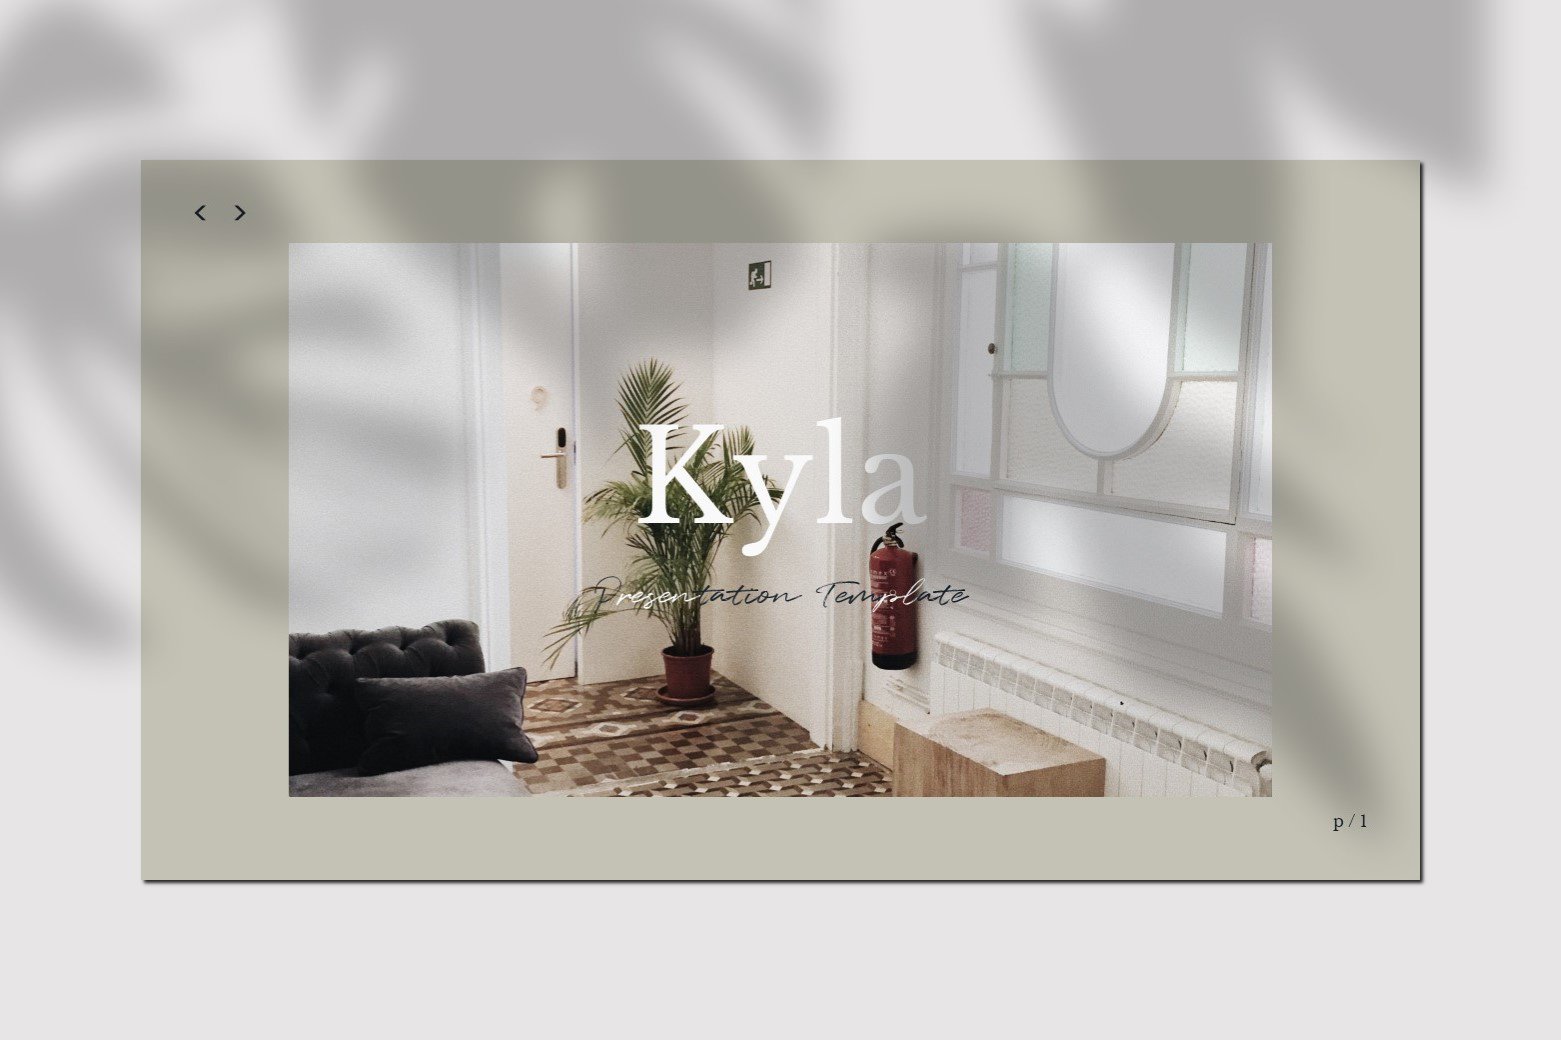 极简独特家居家具设计展示PPT模板 Kyla – Powerpoint Template插图1